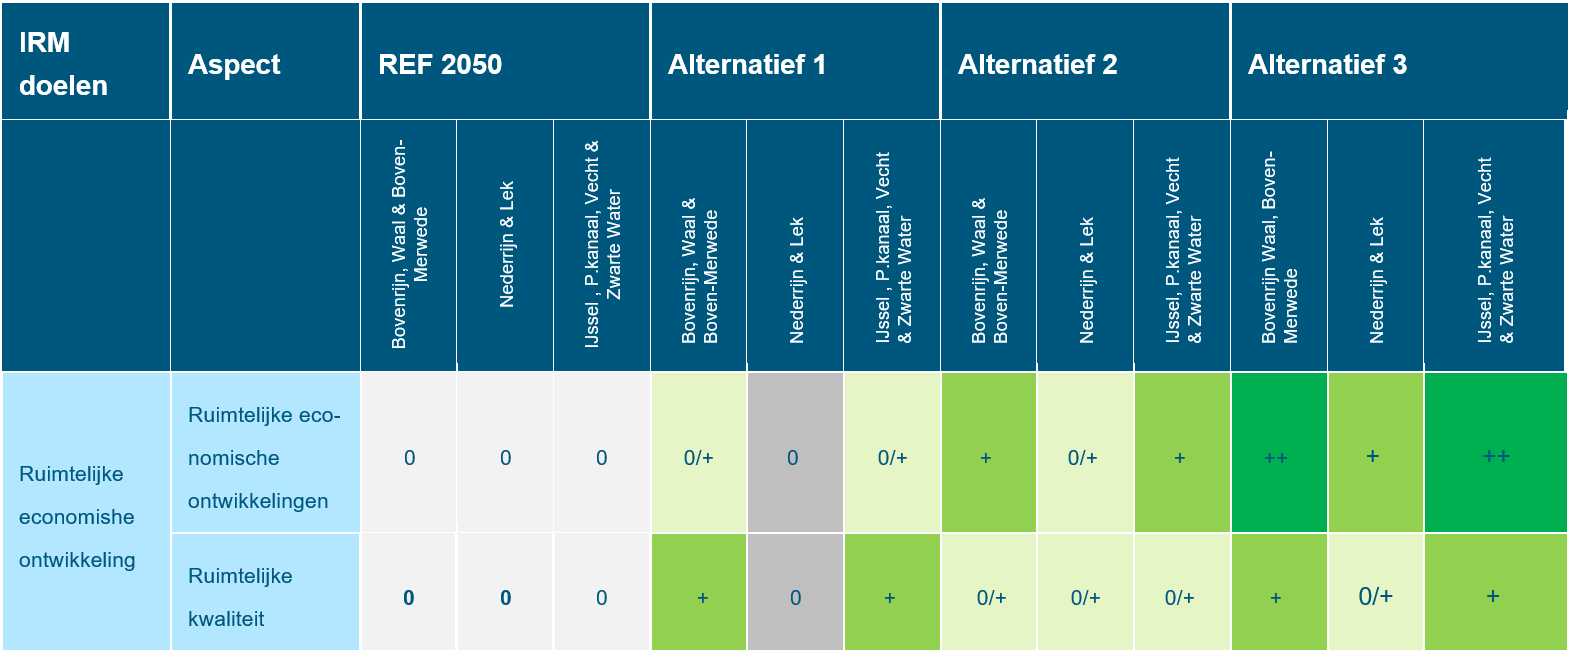 Deze tabel laat de totaalbeoordeling voor het doelbereik van het beoordelingsaspect regionale economische ontwikkeling met versterking van de ruimtelijke kwaliteit zien voor de Rijntakken, voor de referentiesituatie en de drie alternatieven. Deze beoordeling is toegelicht in de tekst voorafgaande aan de tabel.